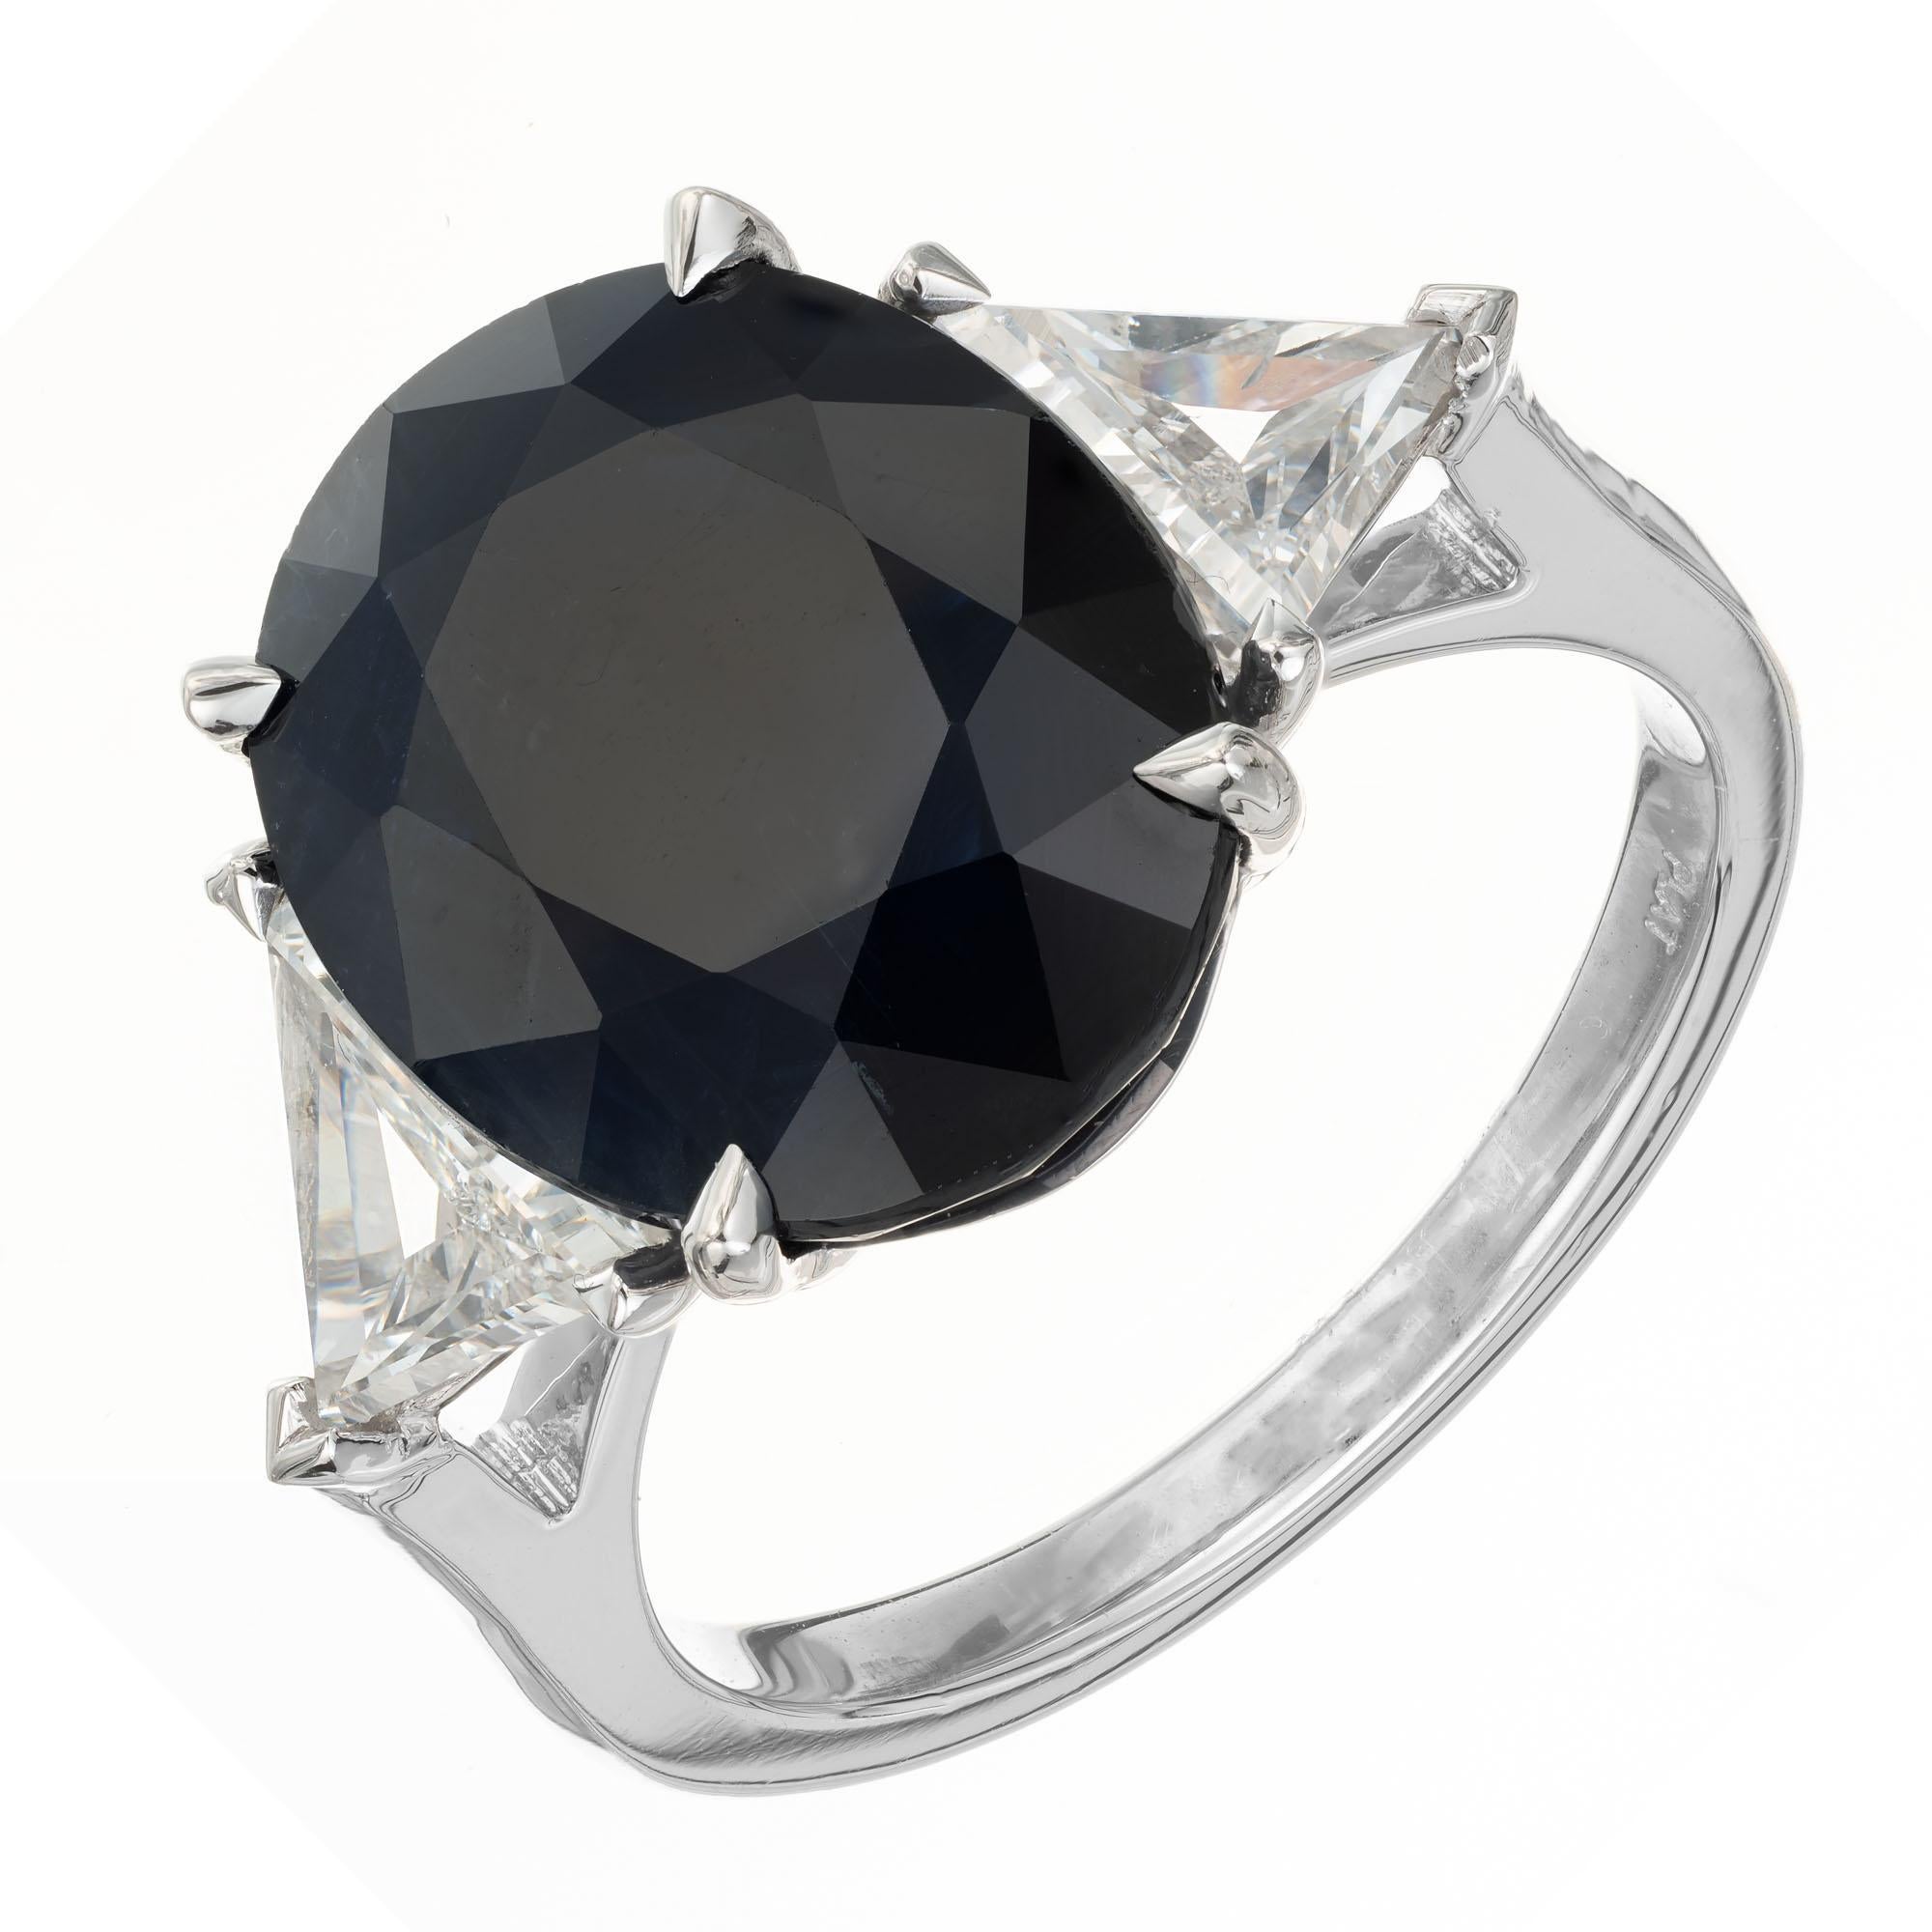 Wir stellen Ihnen dieses Originaldesign von Peter Suchy vor. GIA 7,99 Karat Saphir Diamant Platin Drei-Stein-Verlobungsring. Im Mittelpunkt dieses atemberaubenden Rings steht ein prächtiger ovaler Saphir von 7,99 Karat mit GIA-Zertifikat, der in